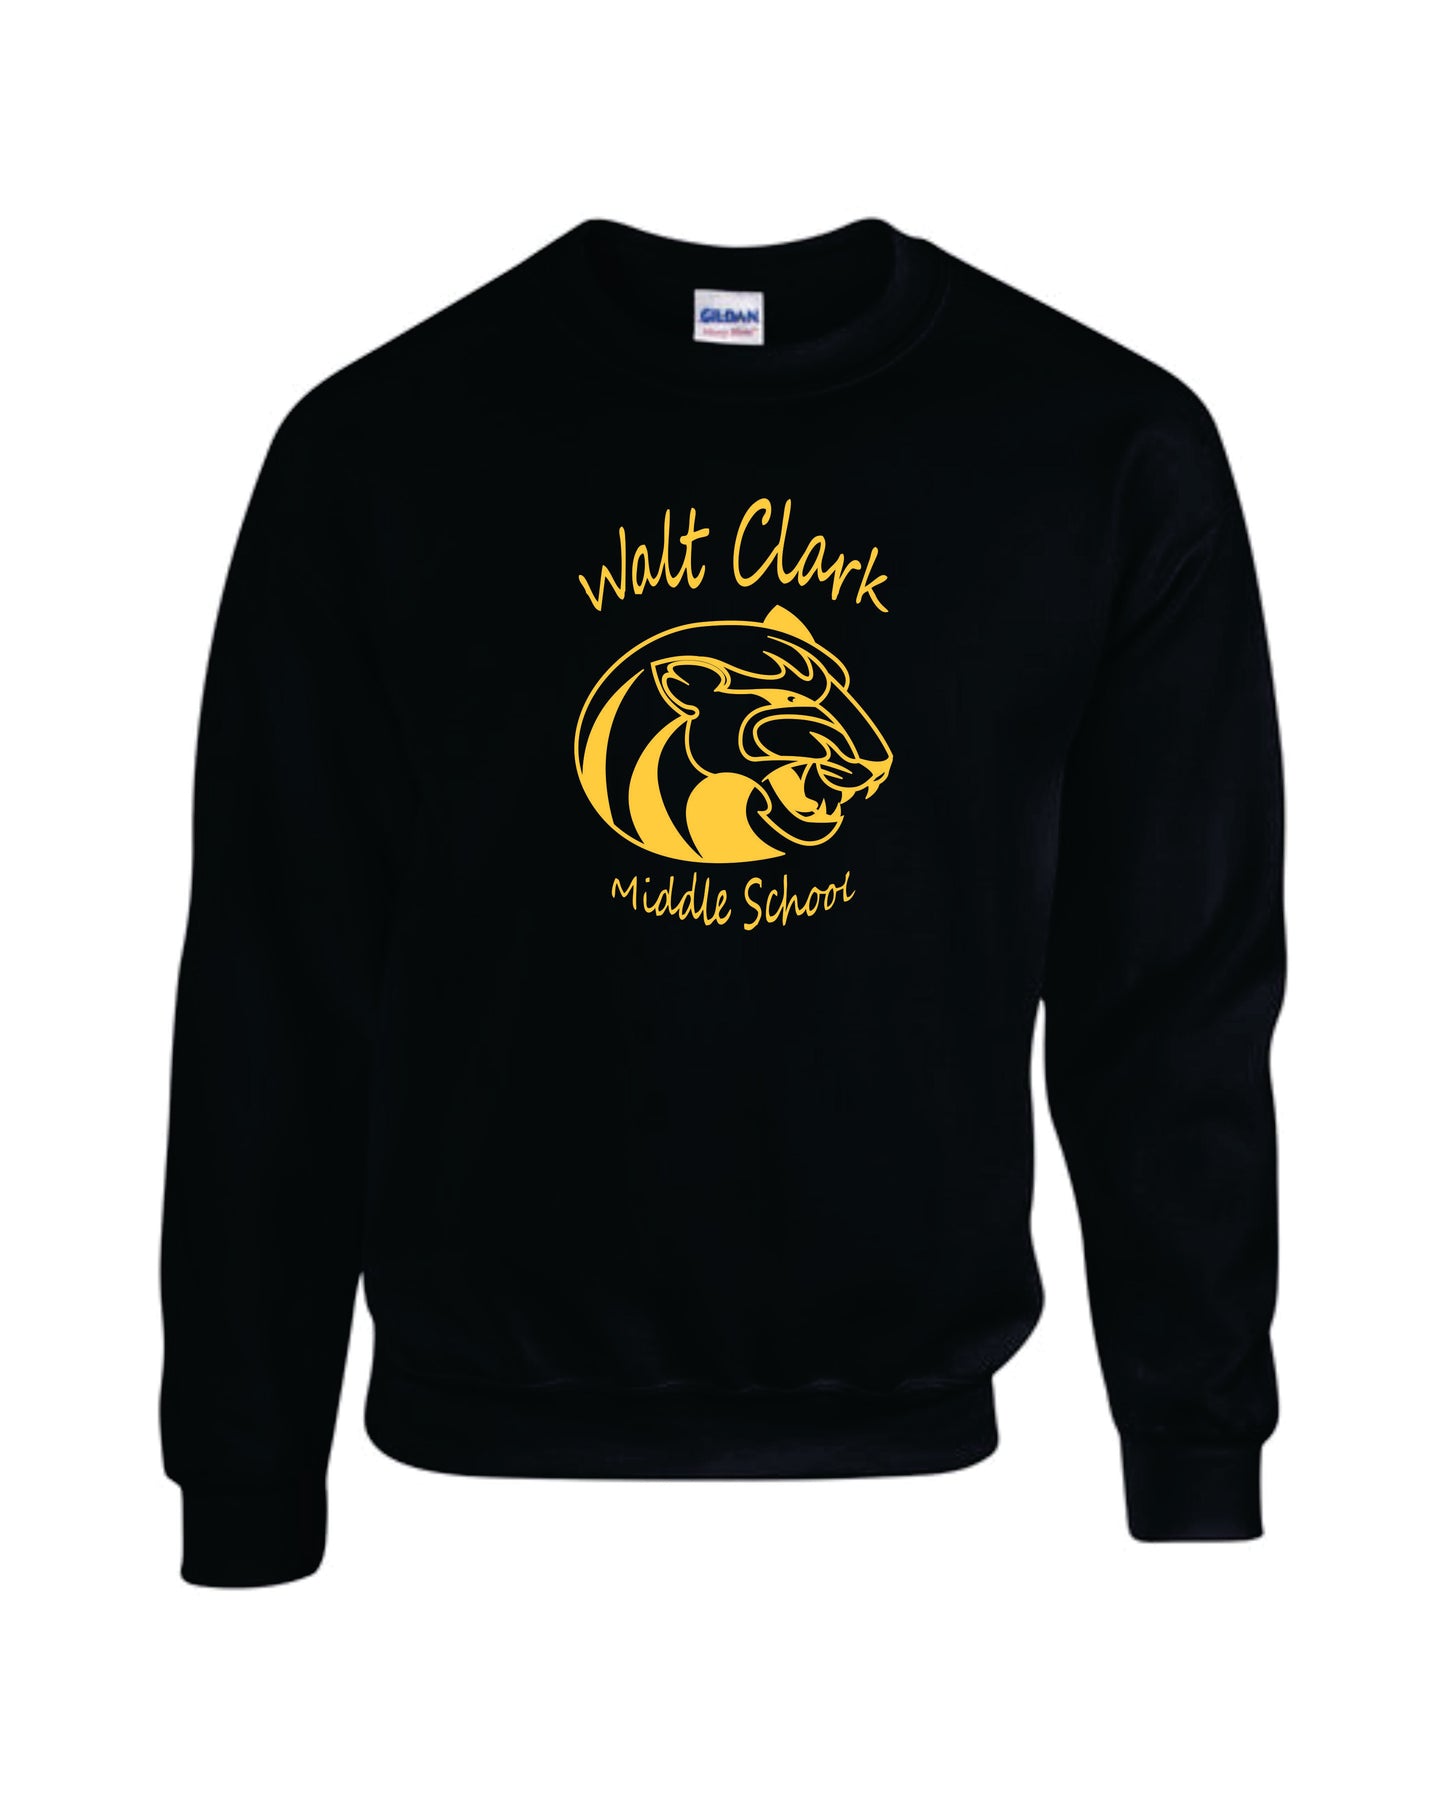 WCMS Walt Clark Middle School logo